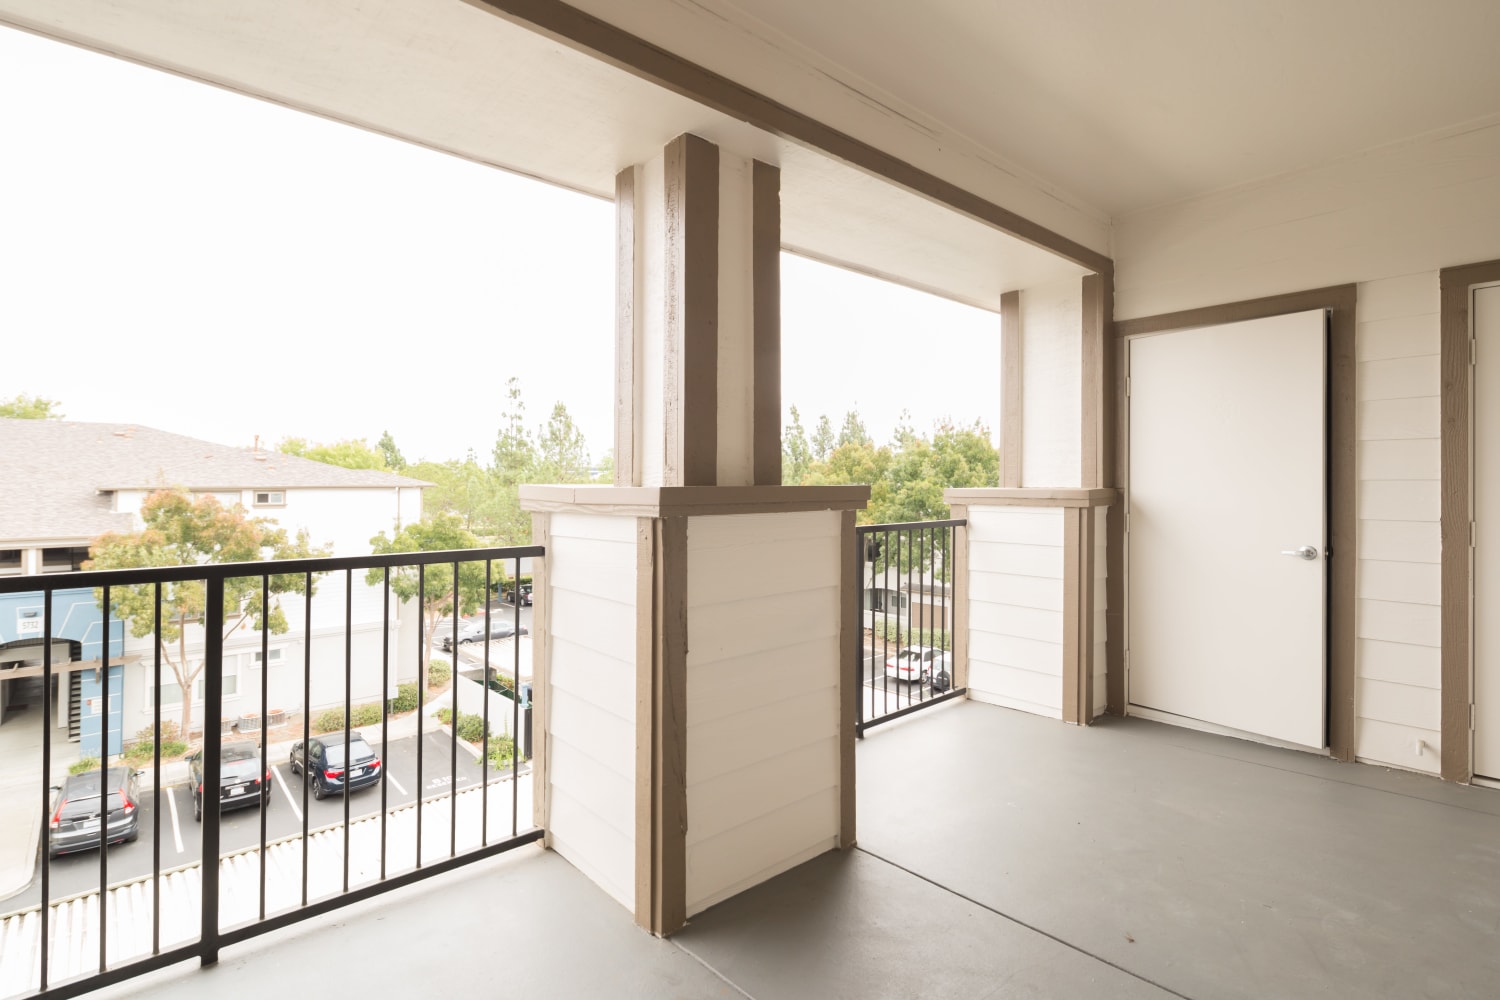 A balcony at Park Hacienda Apartments in Pleasanton, California